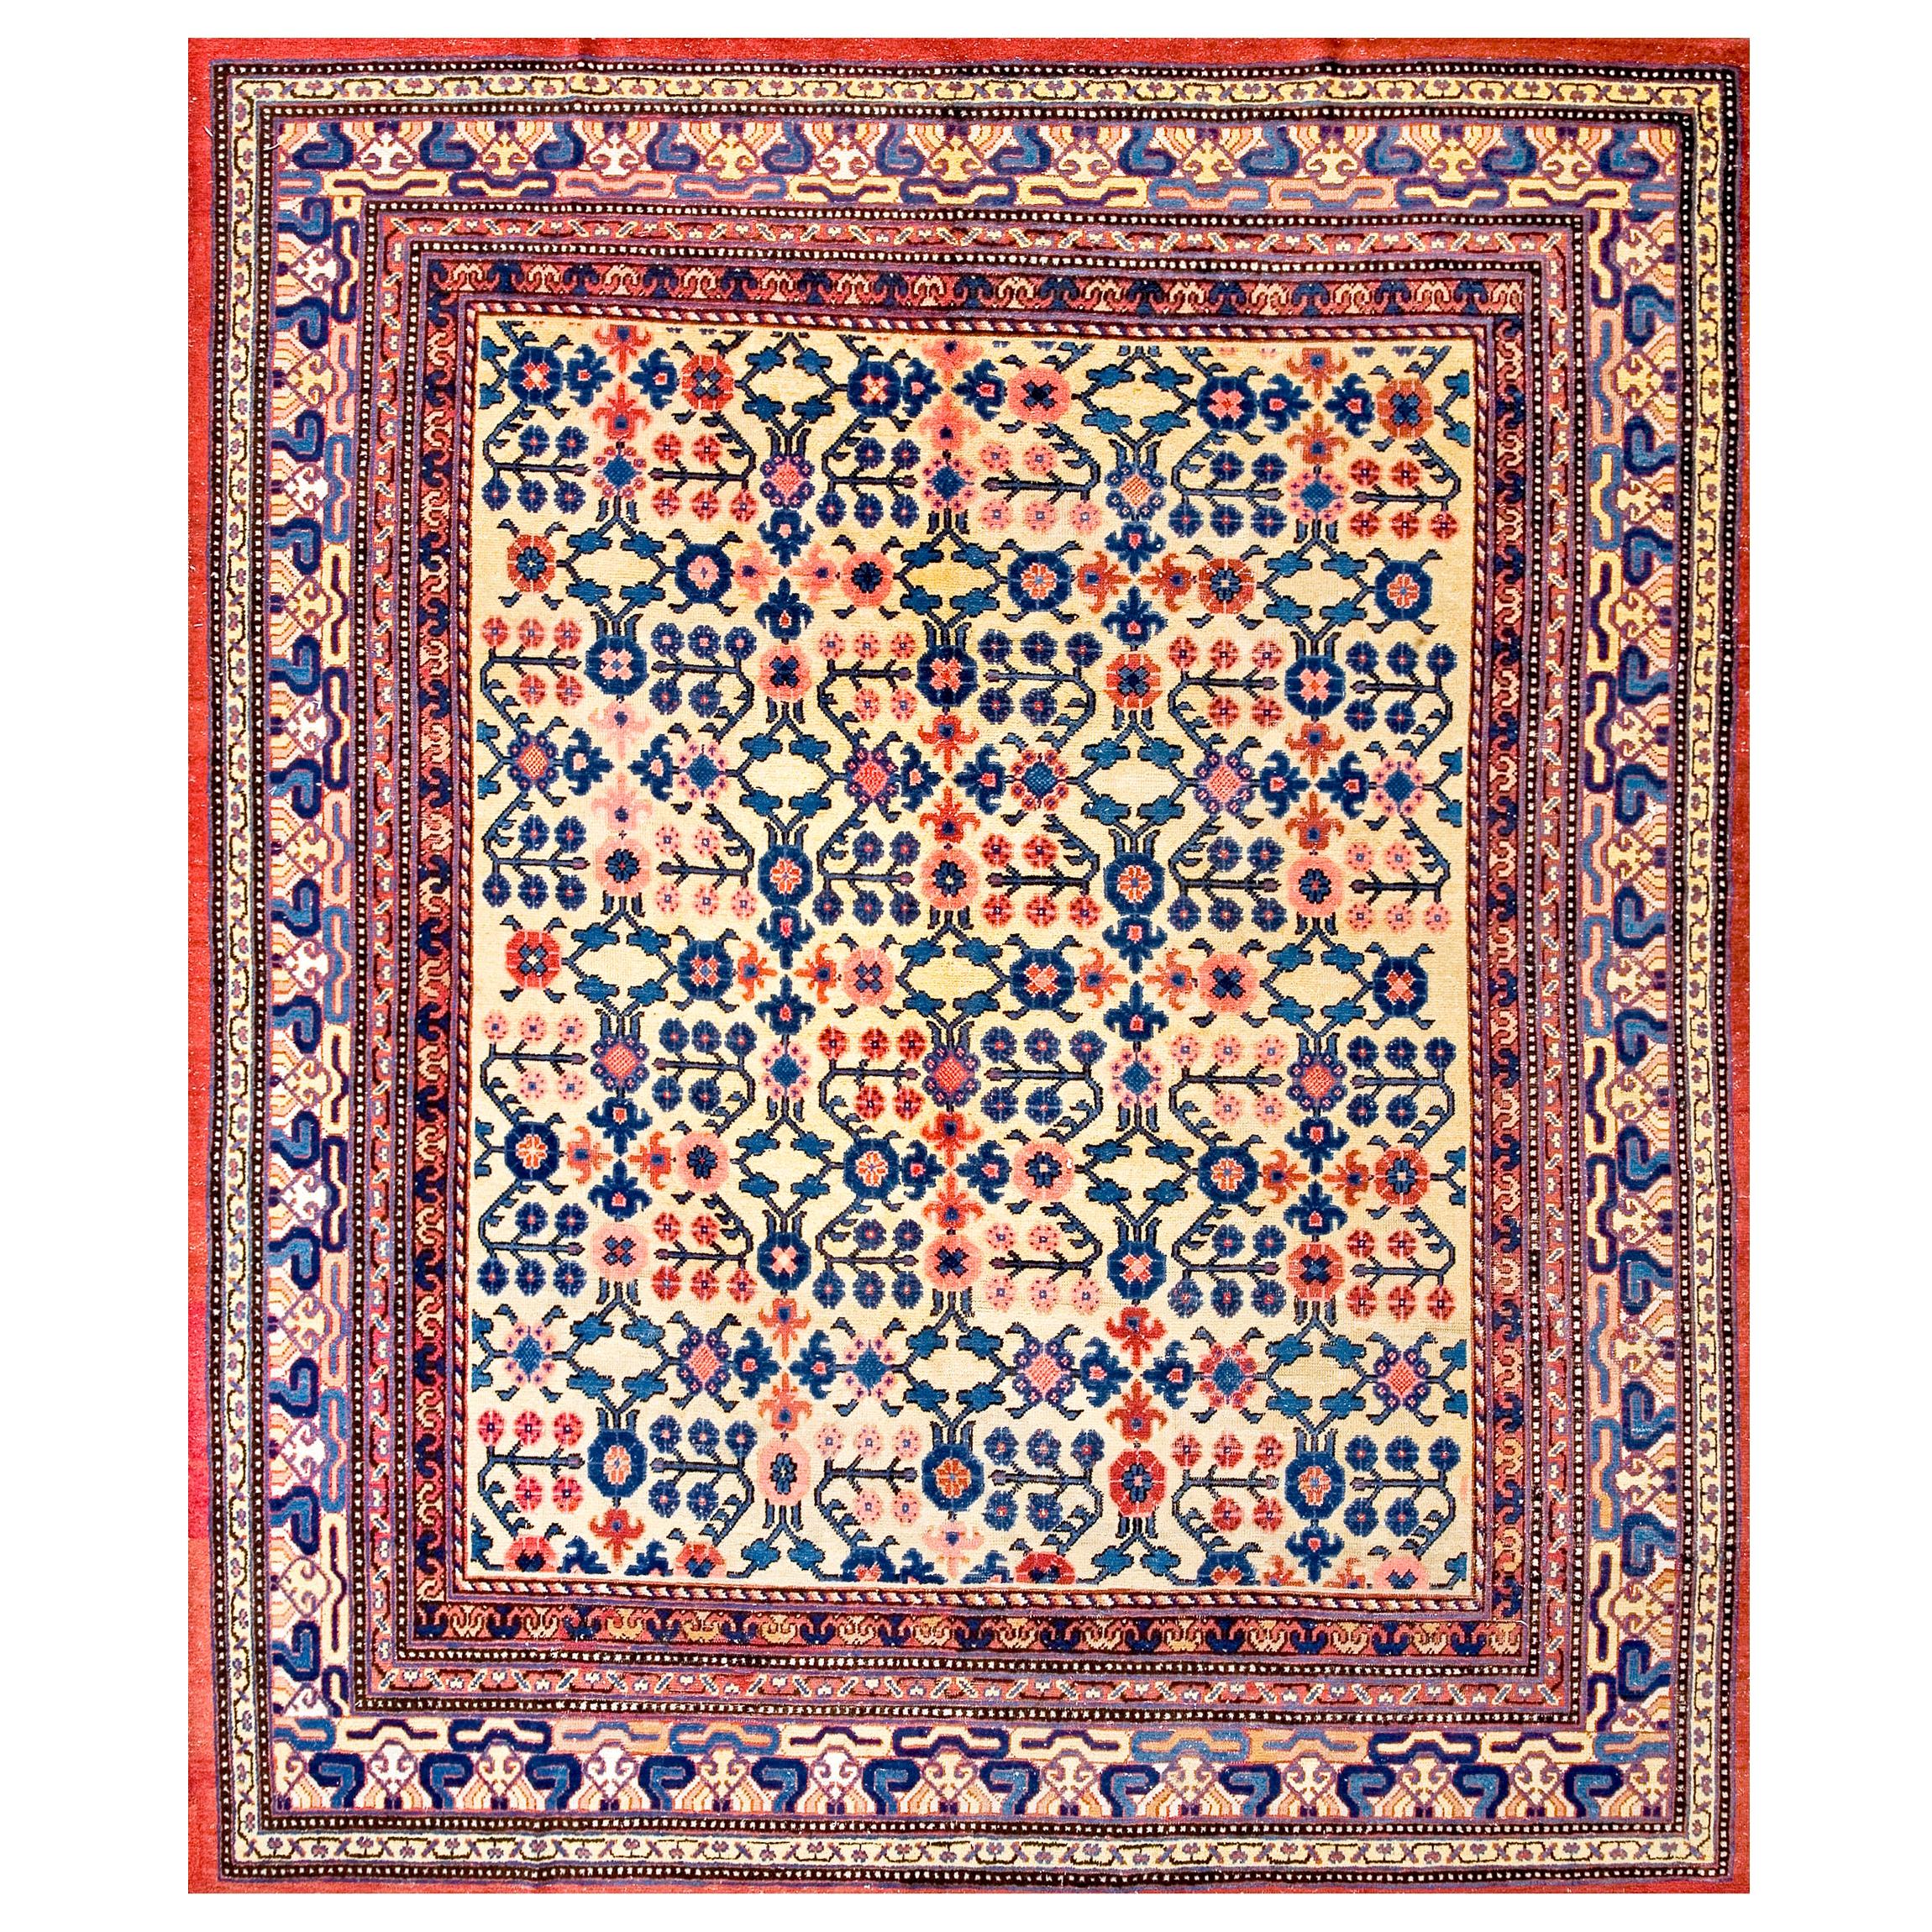 Zentralasiatischer Yarkand-Teppich aus der Mitte des 19. Jahrhunderts ( 8'3" x 9'8" - 252 x 295")